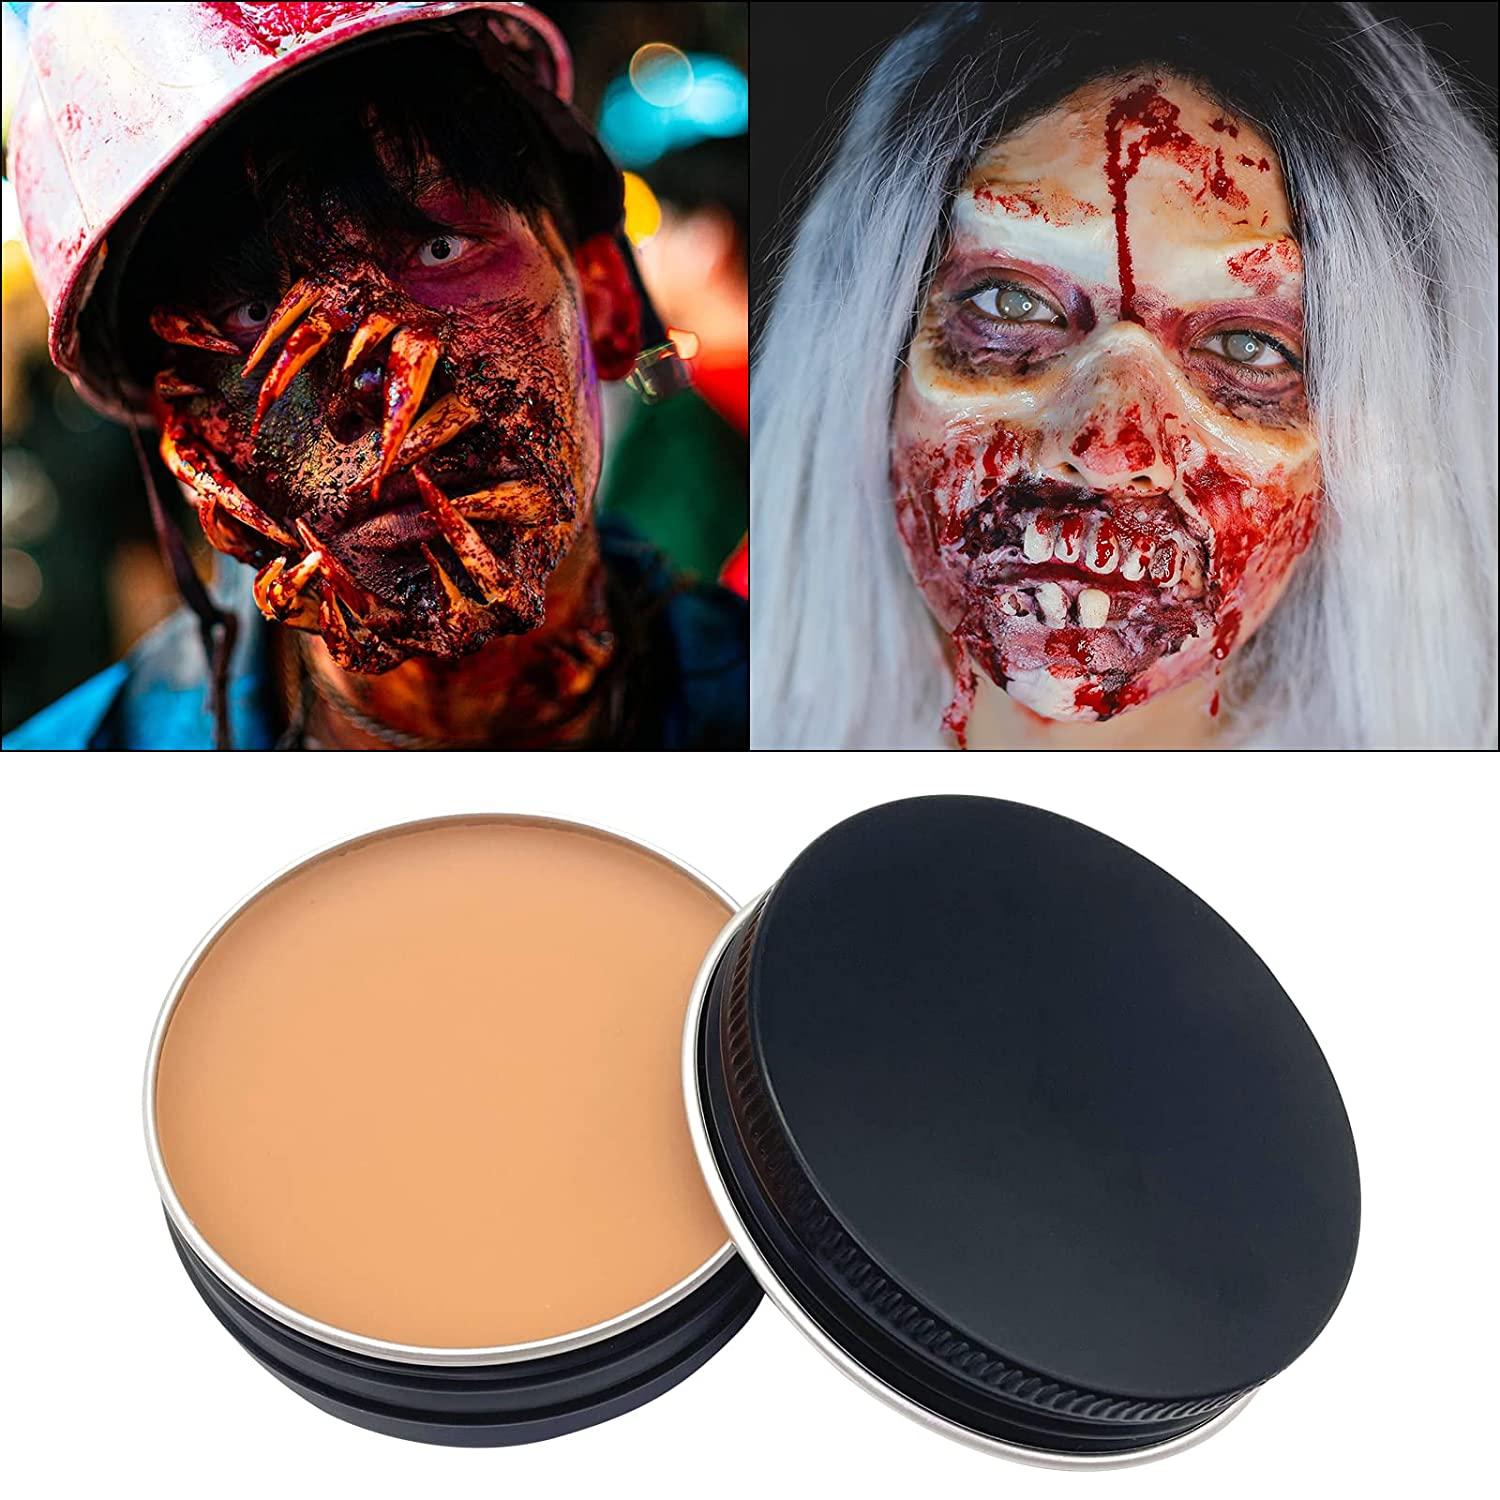 MAKE YOUR OWN SCAR WAX😱 #makeuptutorial #halloweenmakeup #makeuphacks